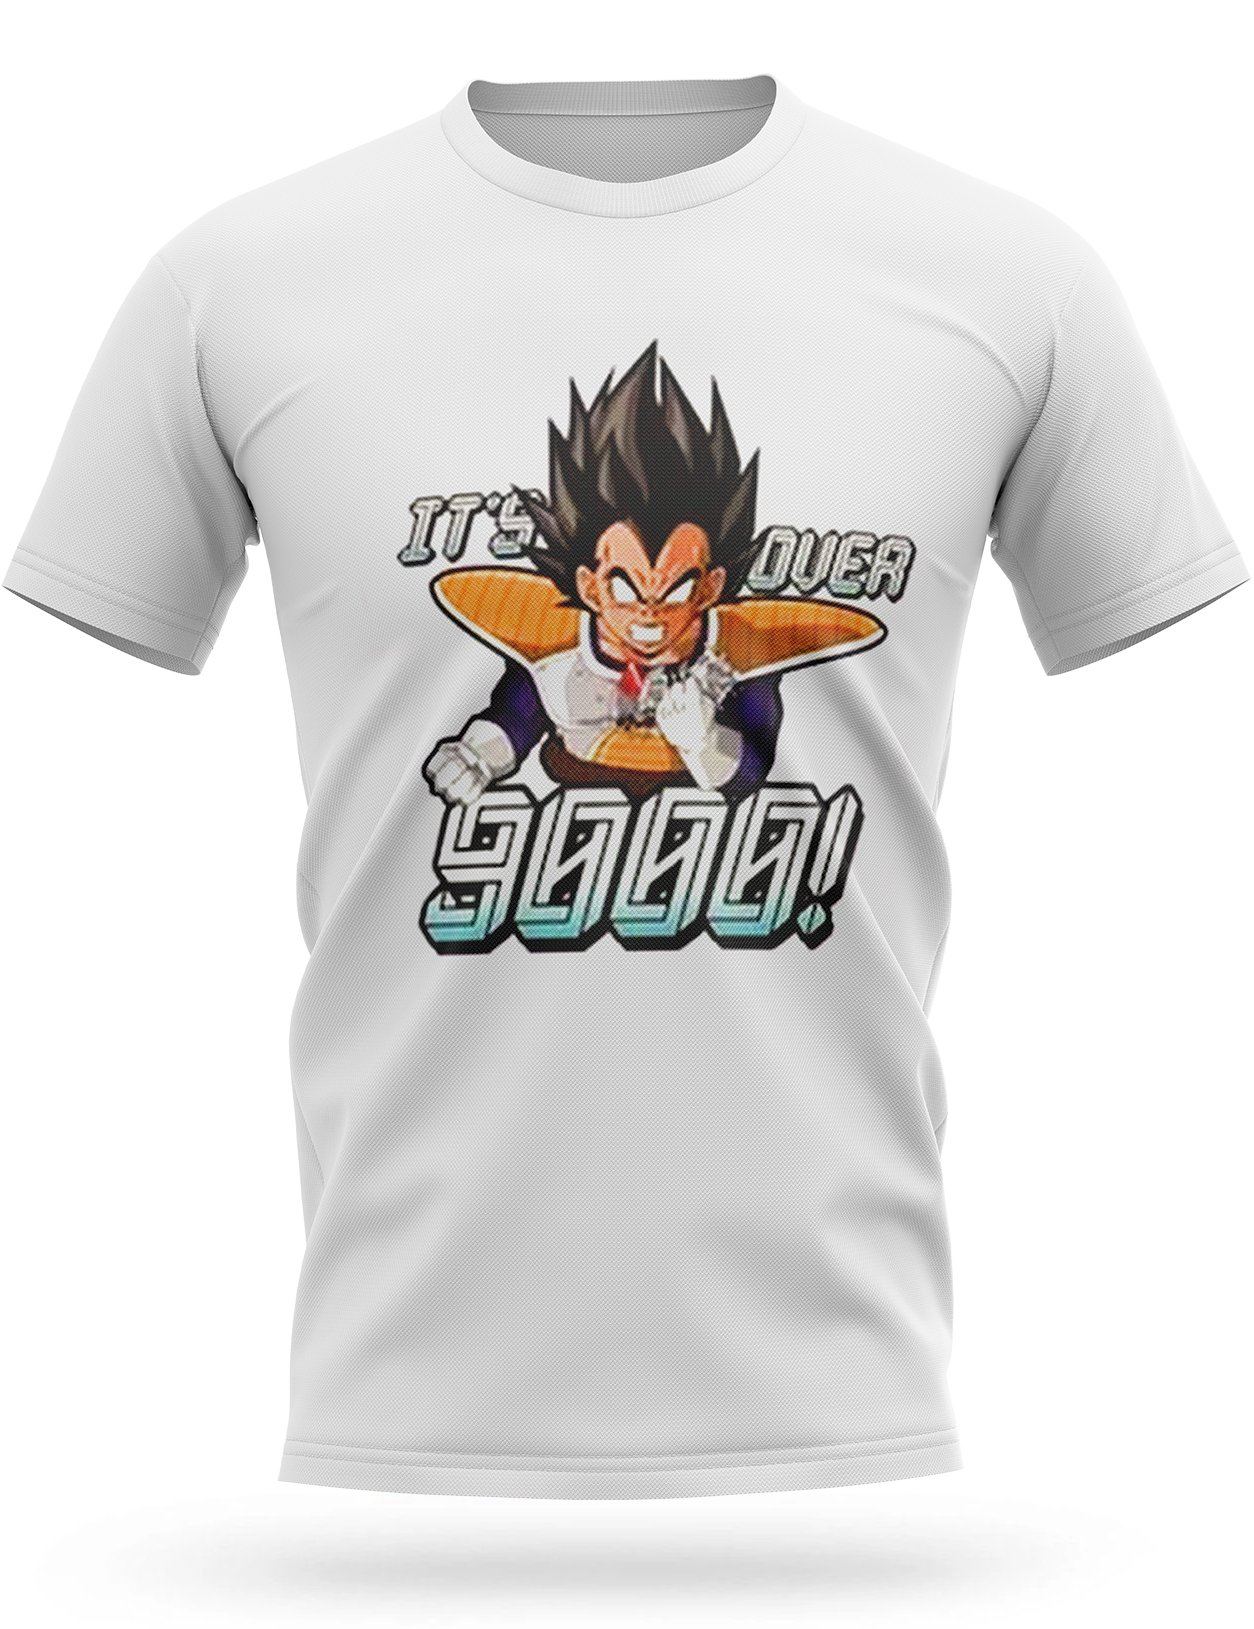 T Shirt Vegeta Over 9000